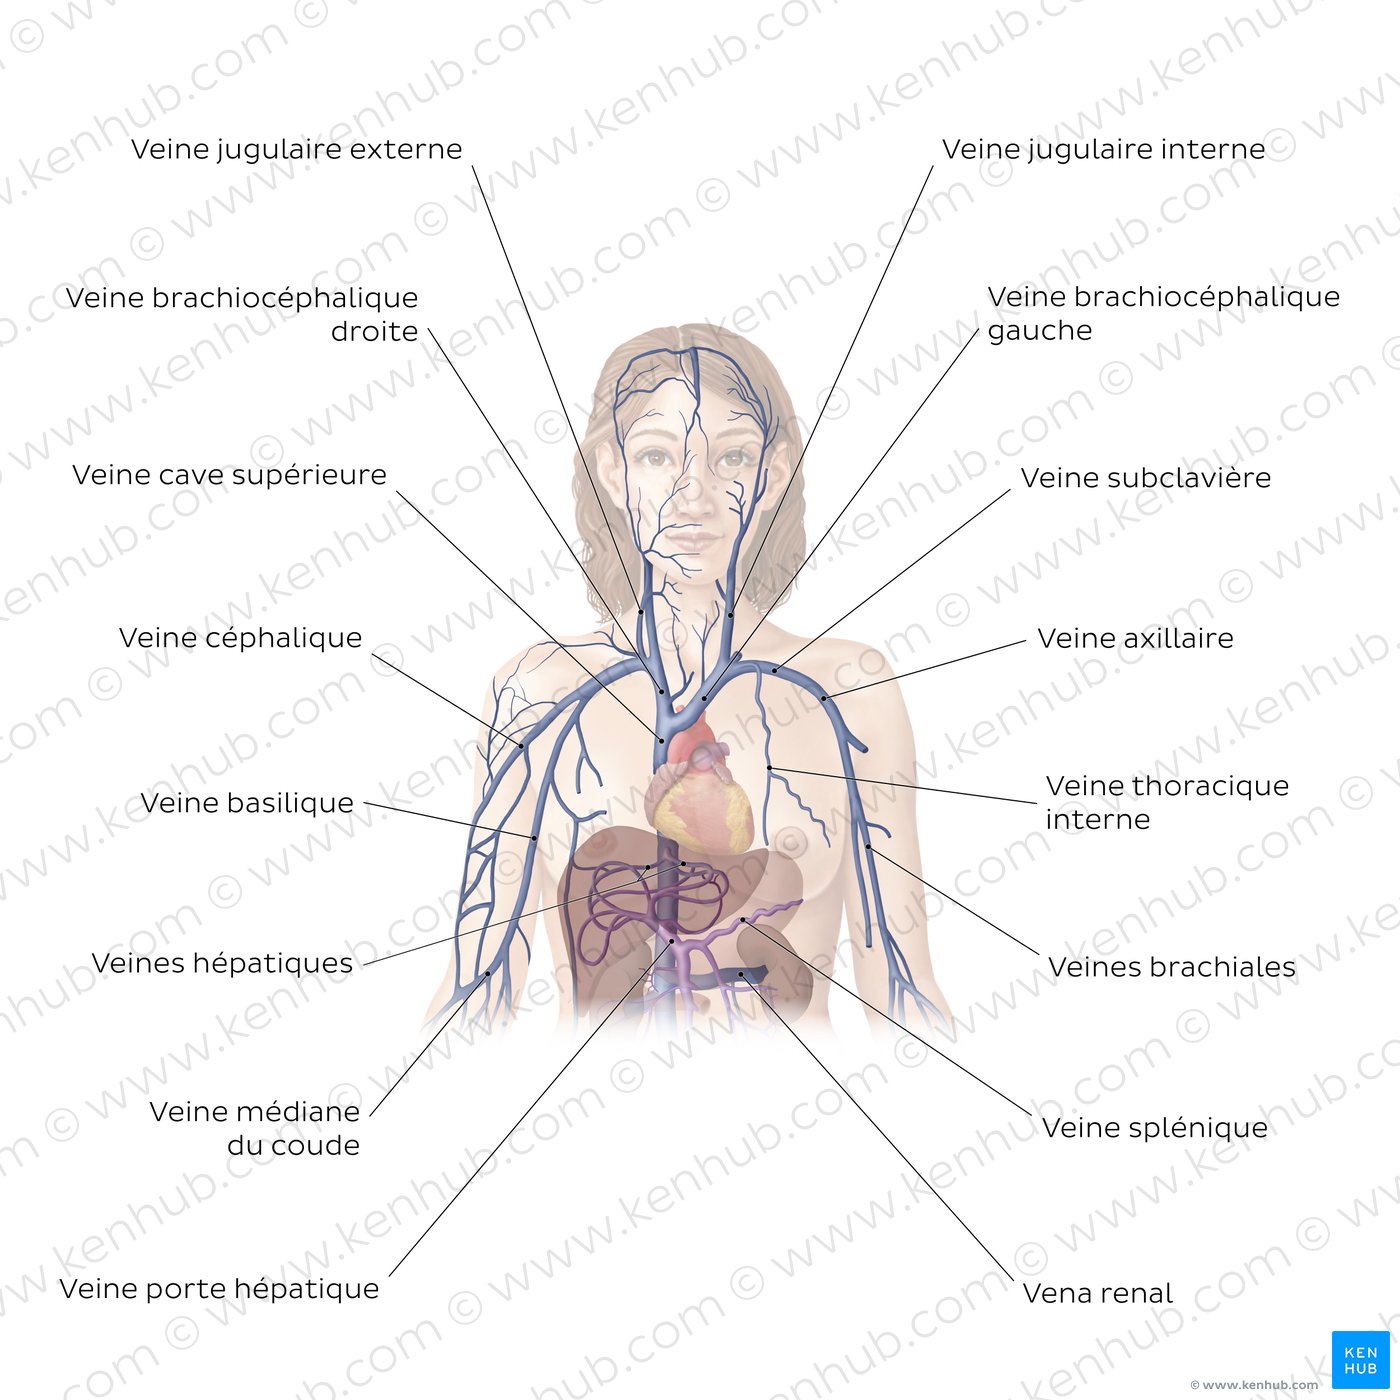 Système cardiovasculaire : Veines de la partie supérieure du corps